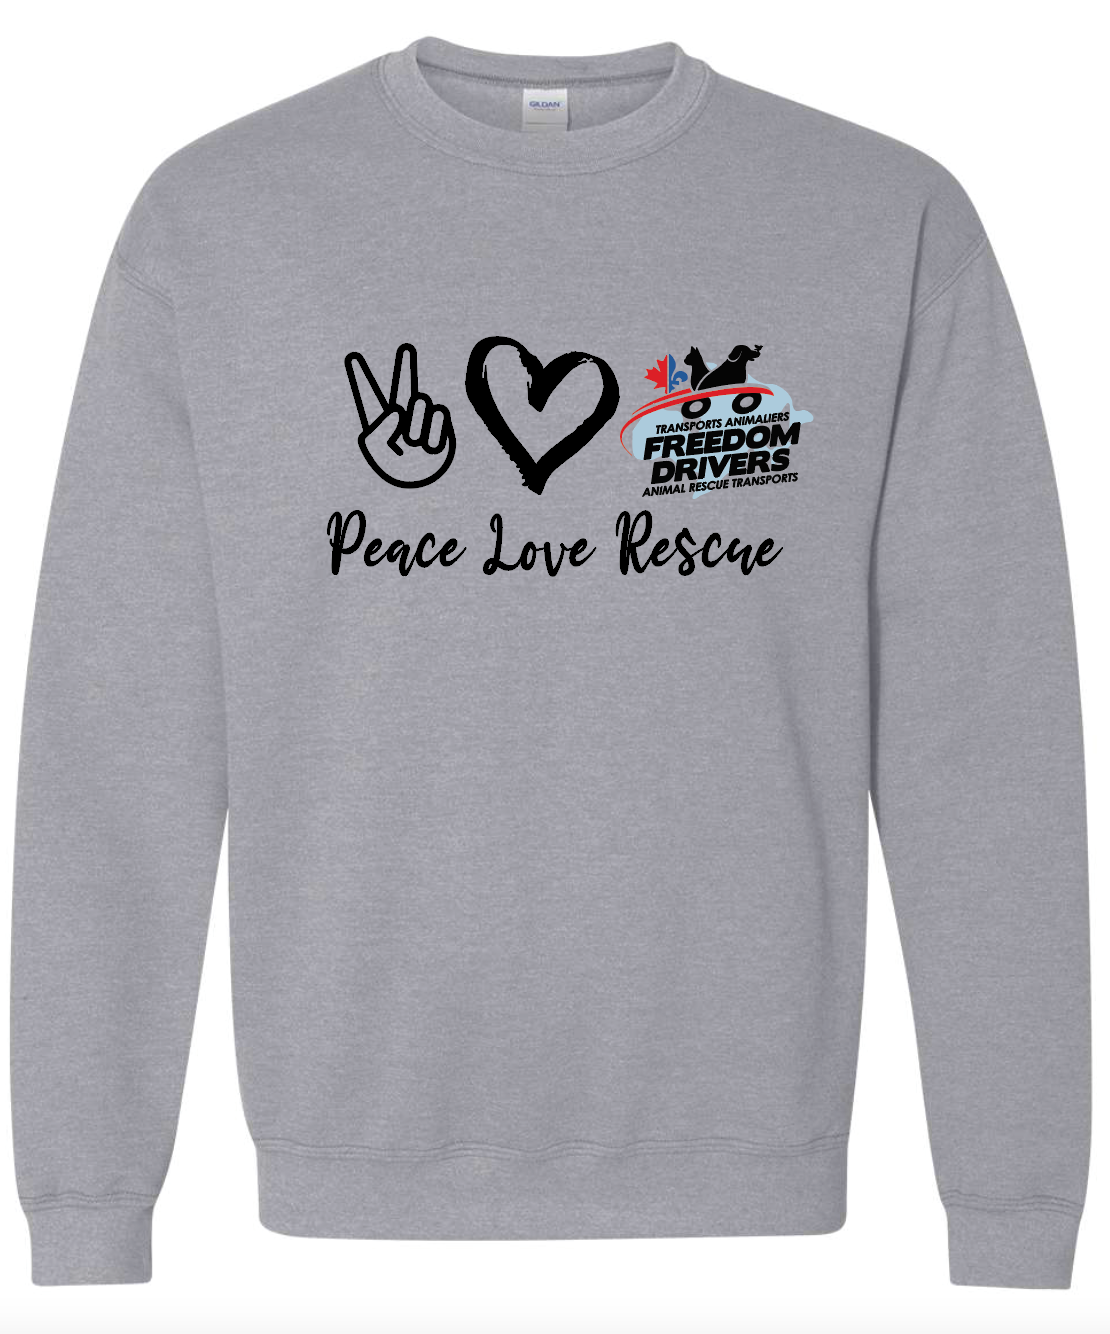 Peace Love Rescue Crewneck Sweater